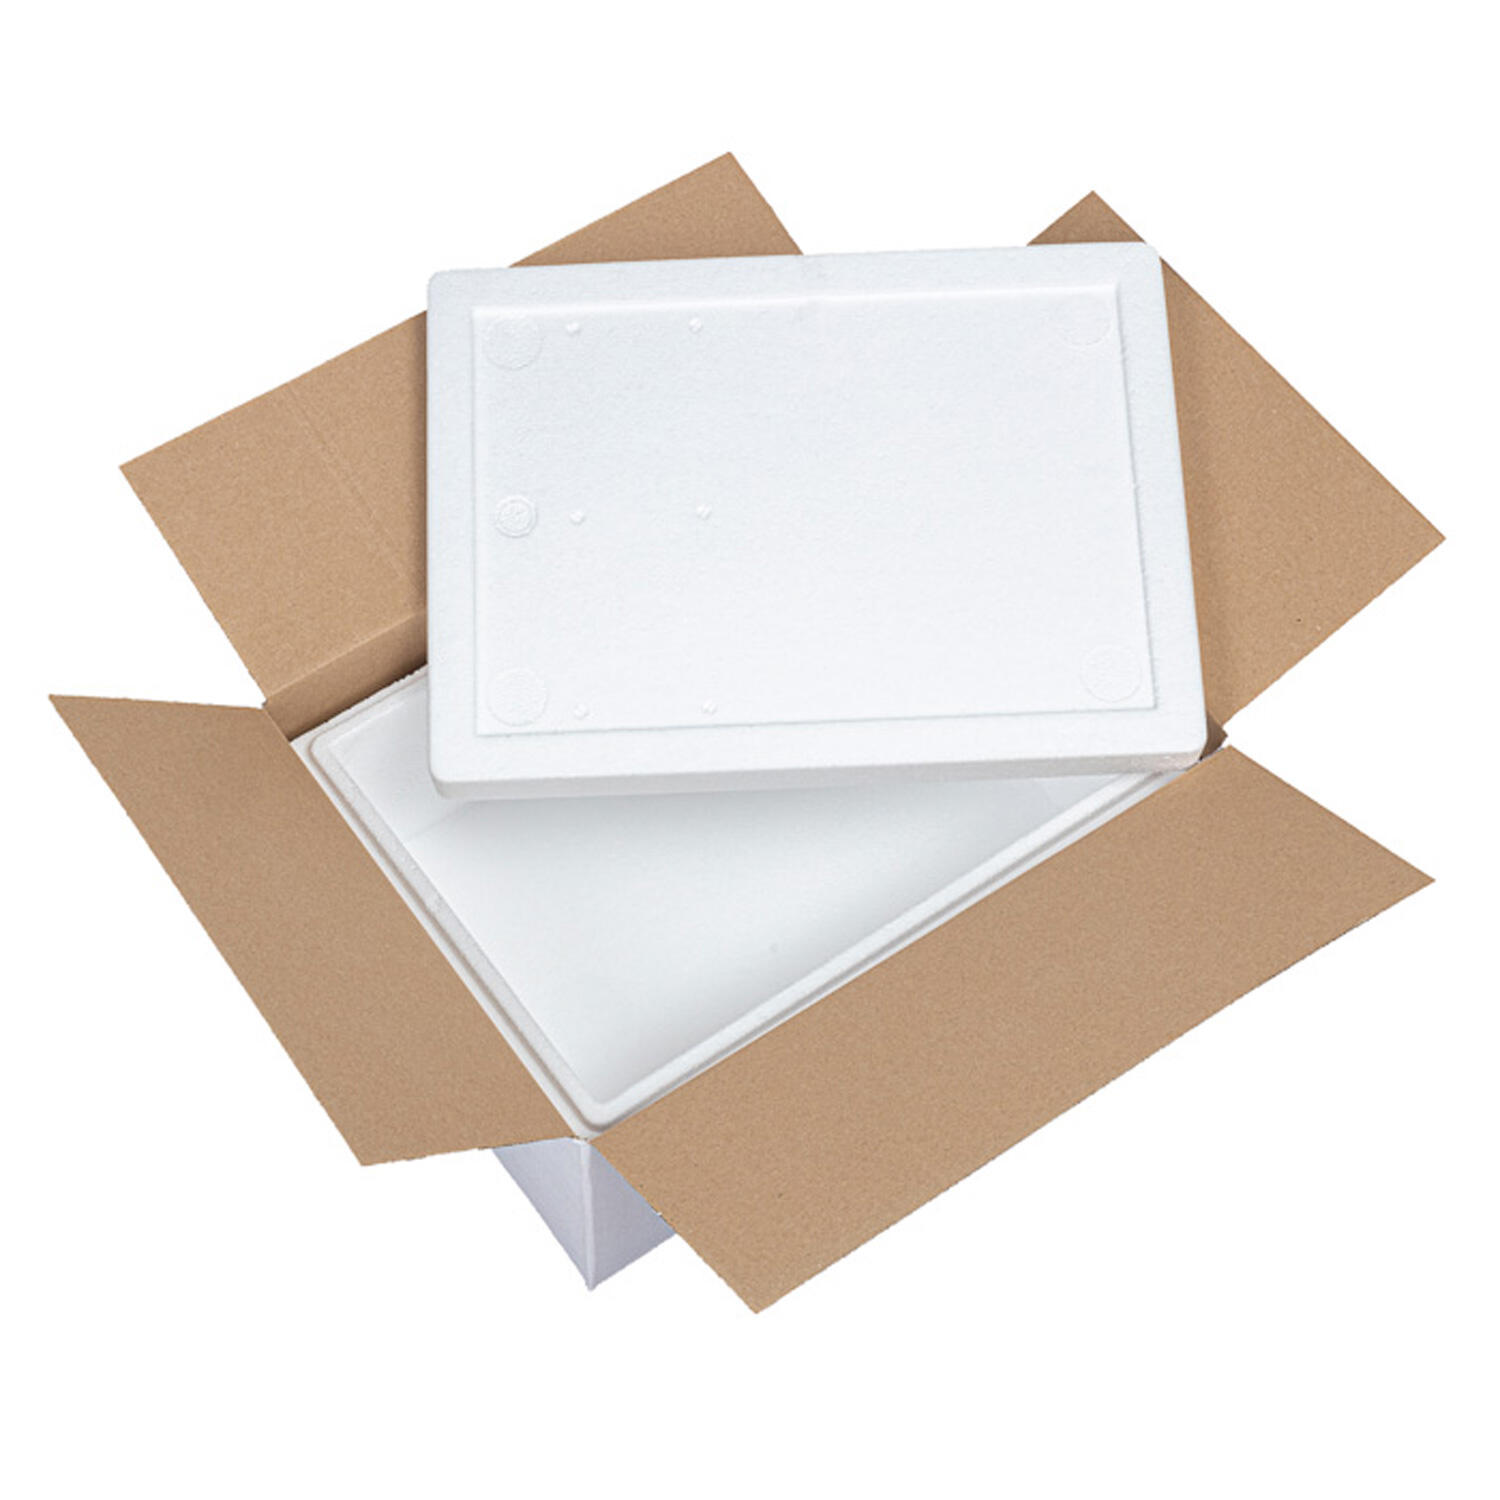 Isolierboxen mit Deckel aus EPS 385 x 285 x 174 mm 10,5 Liter, inkl. Umkarton